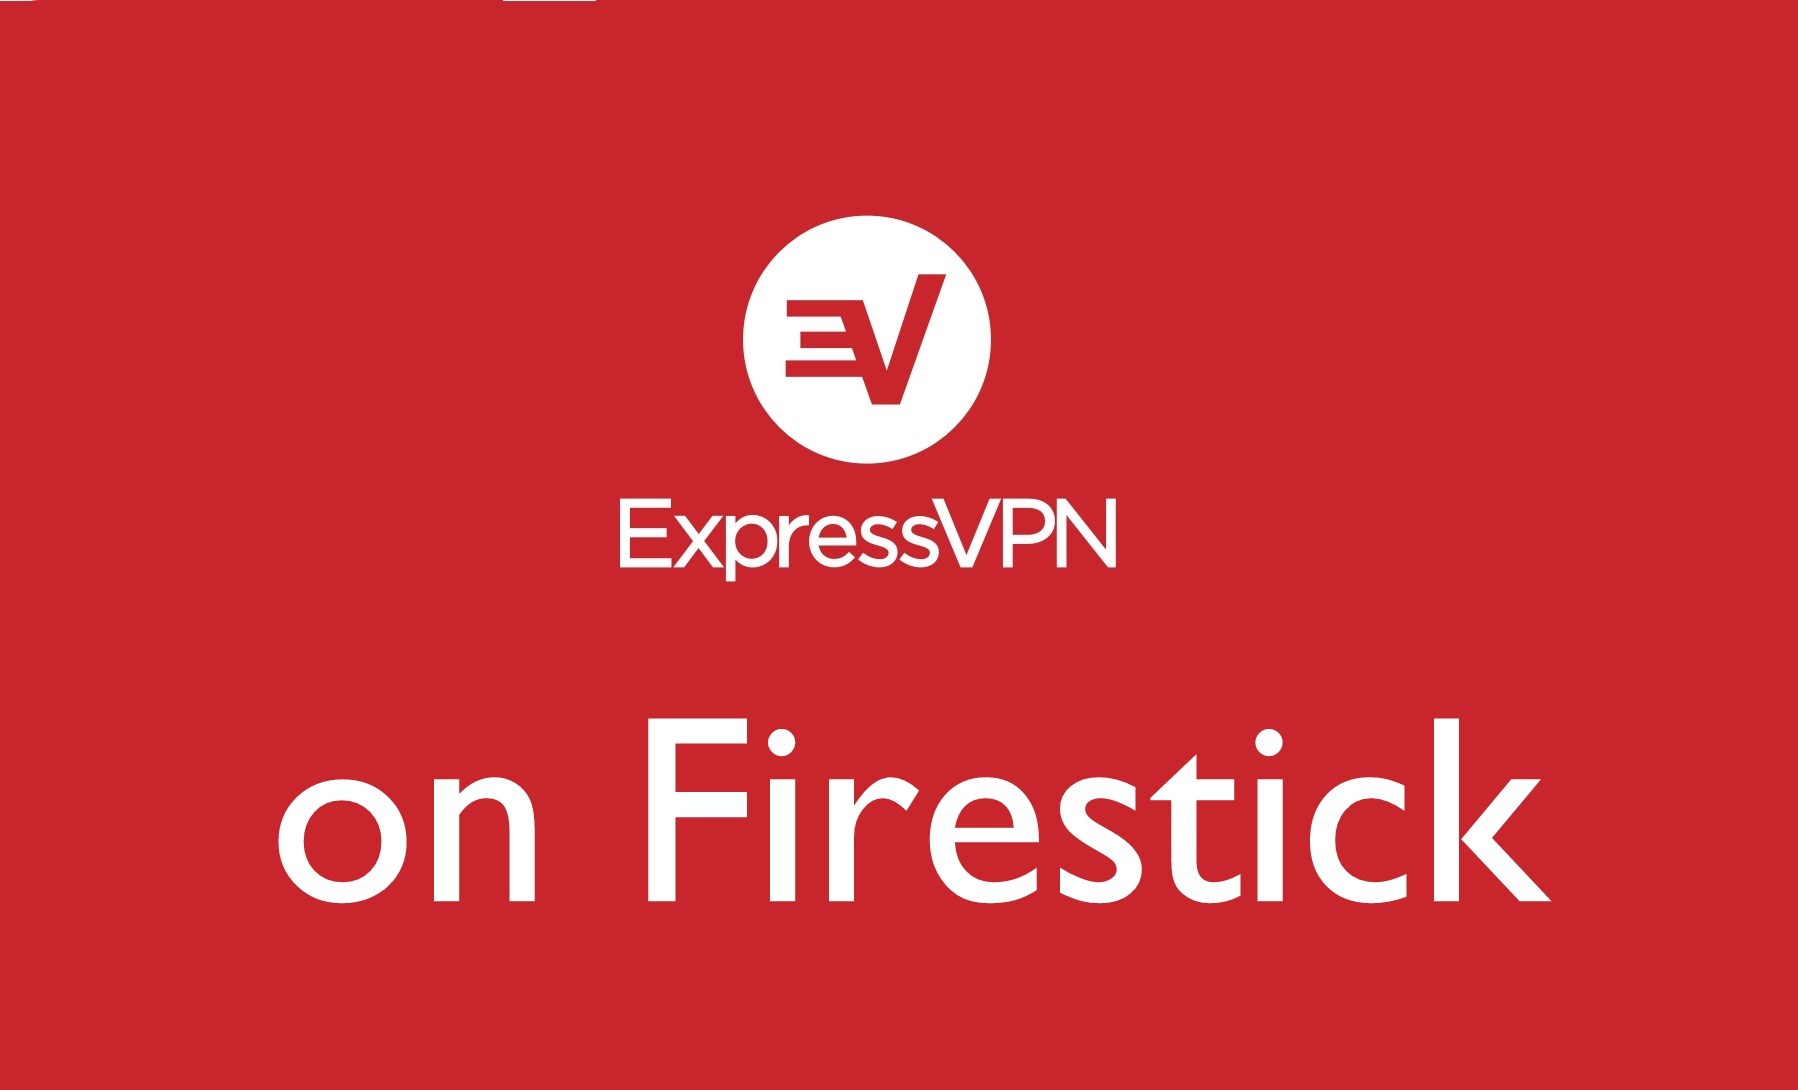 Nola instalatu eta erabili ExpressVPN Firestick-en
